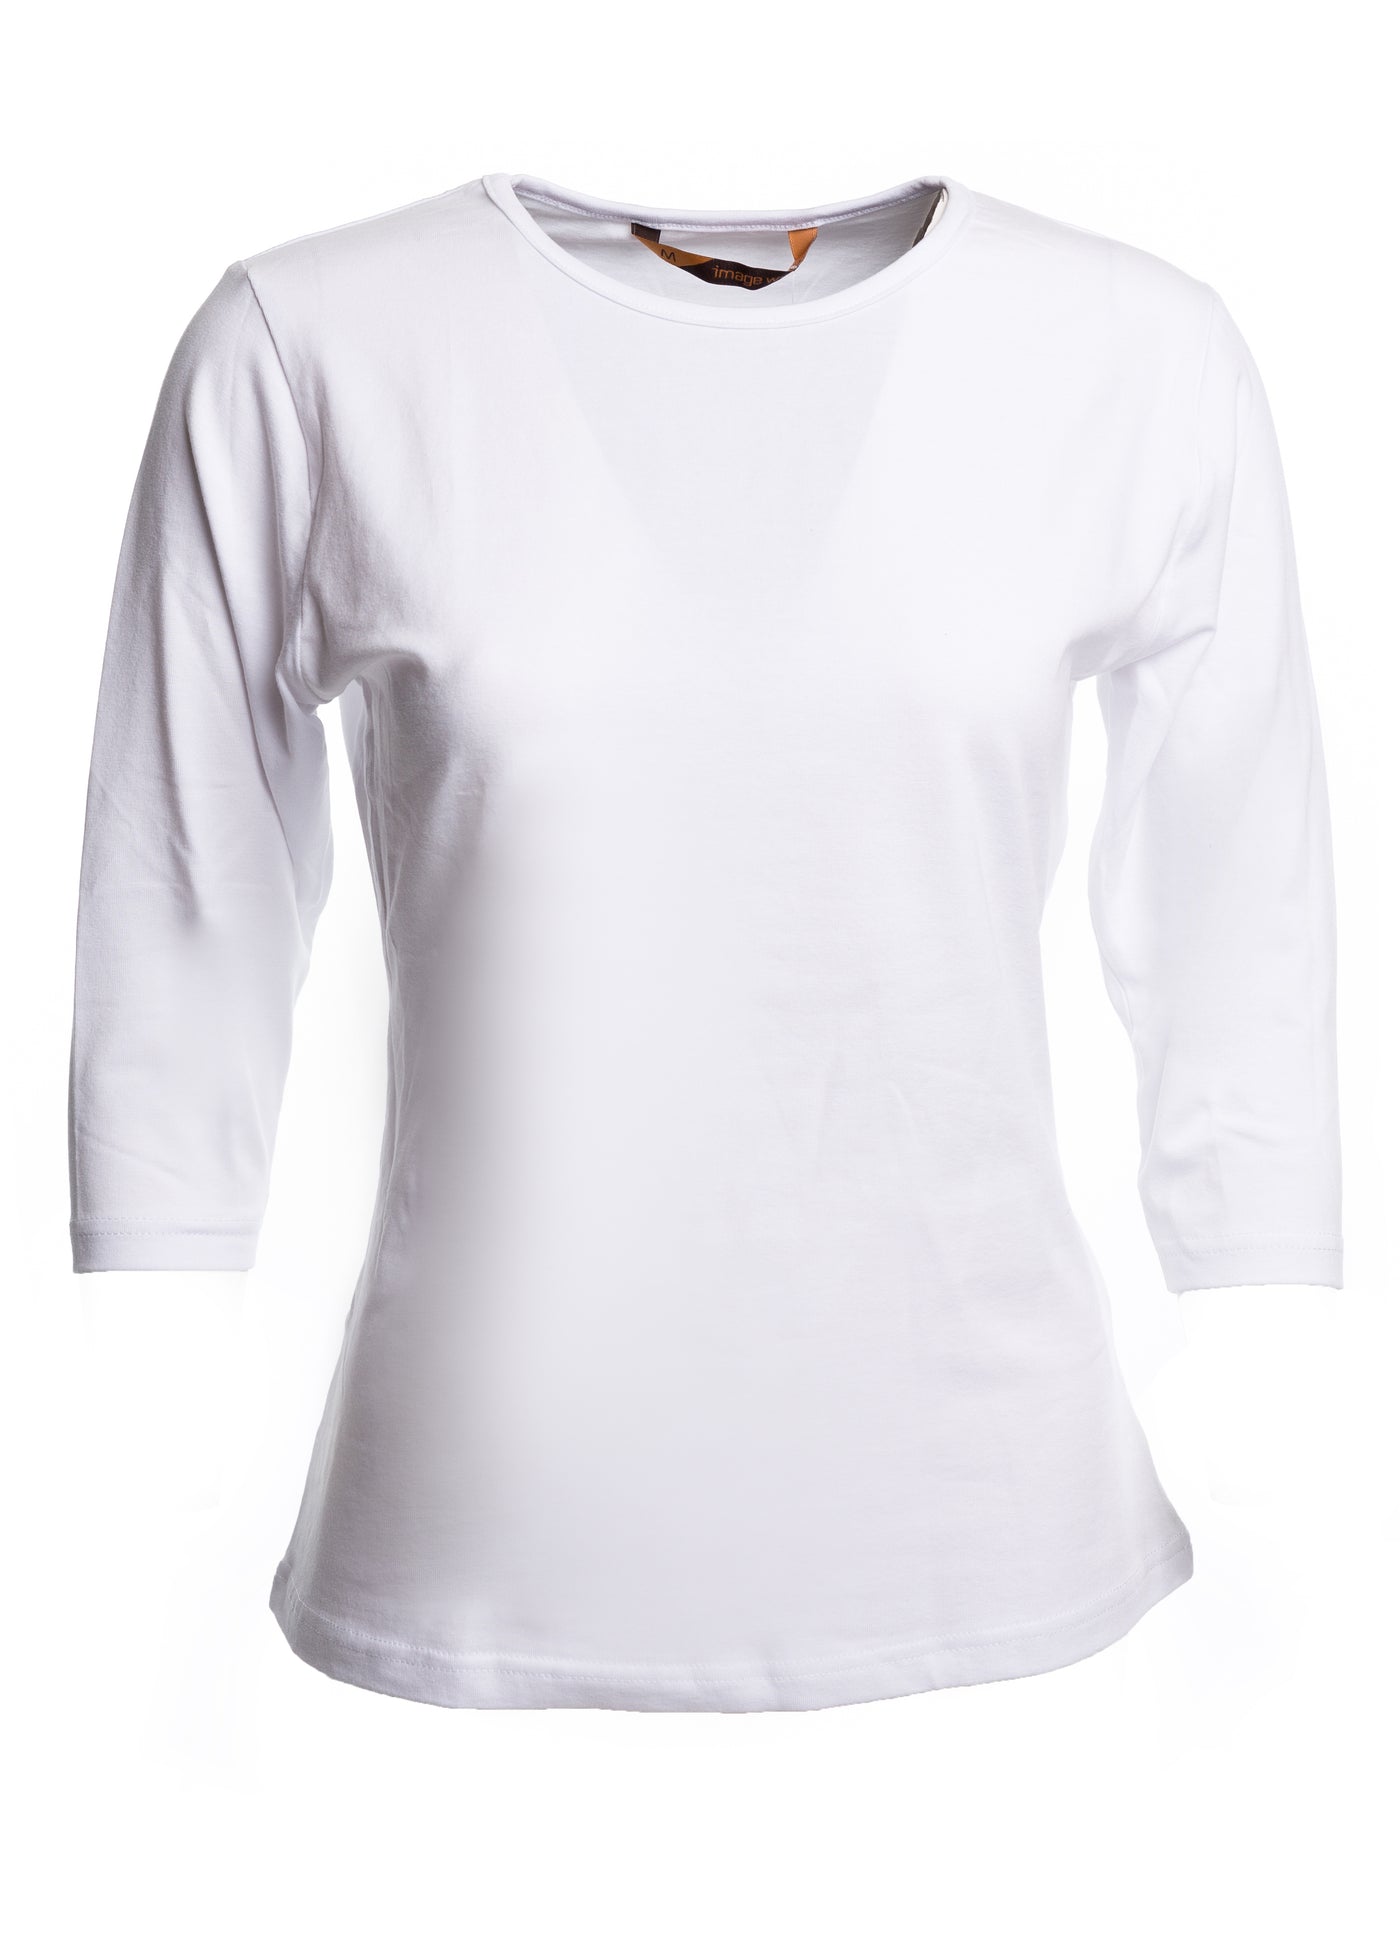 Naisten tyköistuva paita 3/4 -hihoilla ja O-pääntiellä. Aavistuksen vartalonmyötäinen malli.